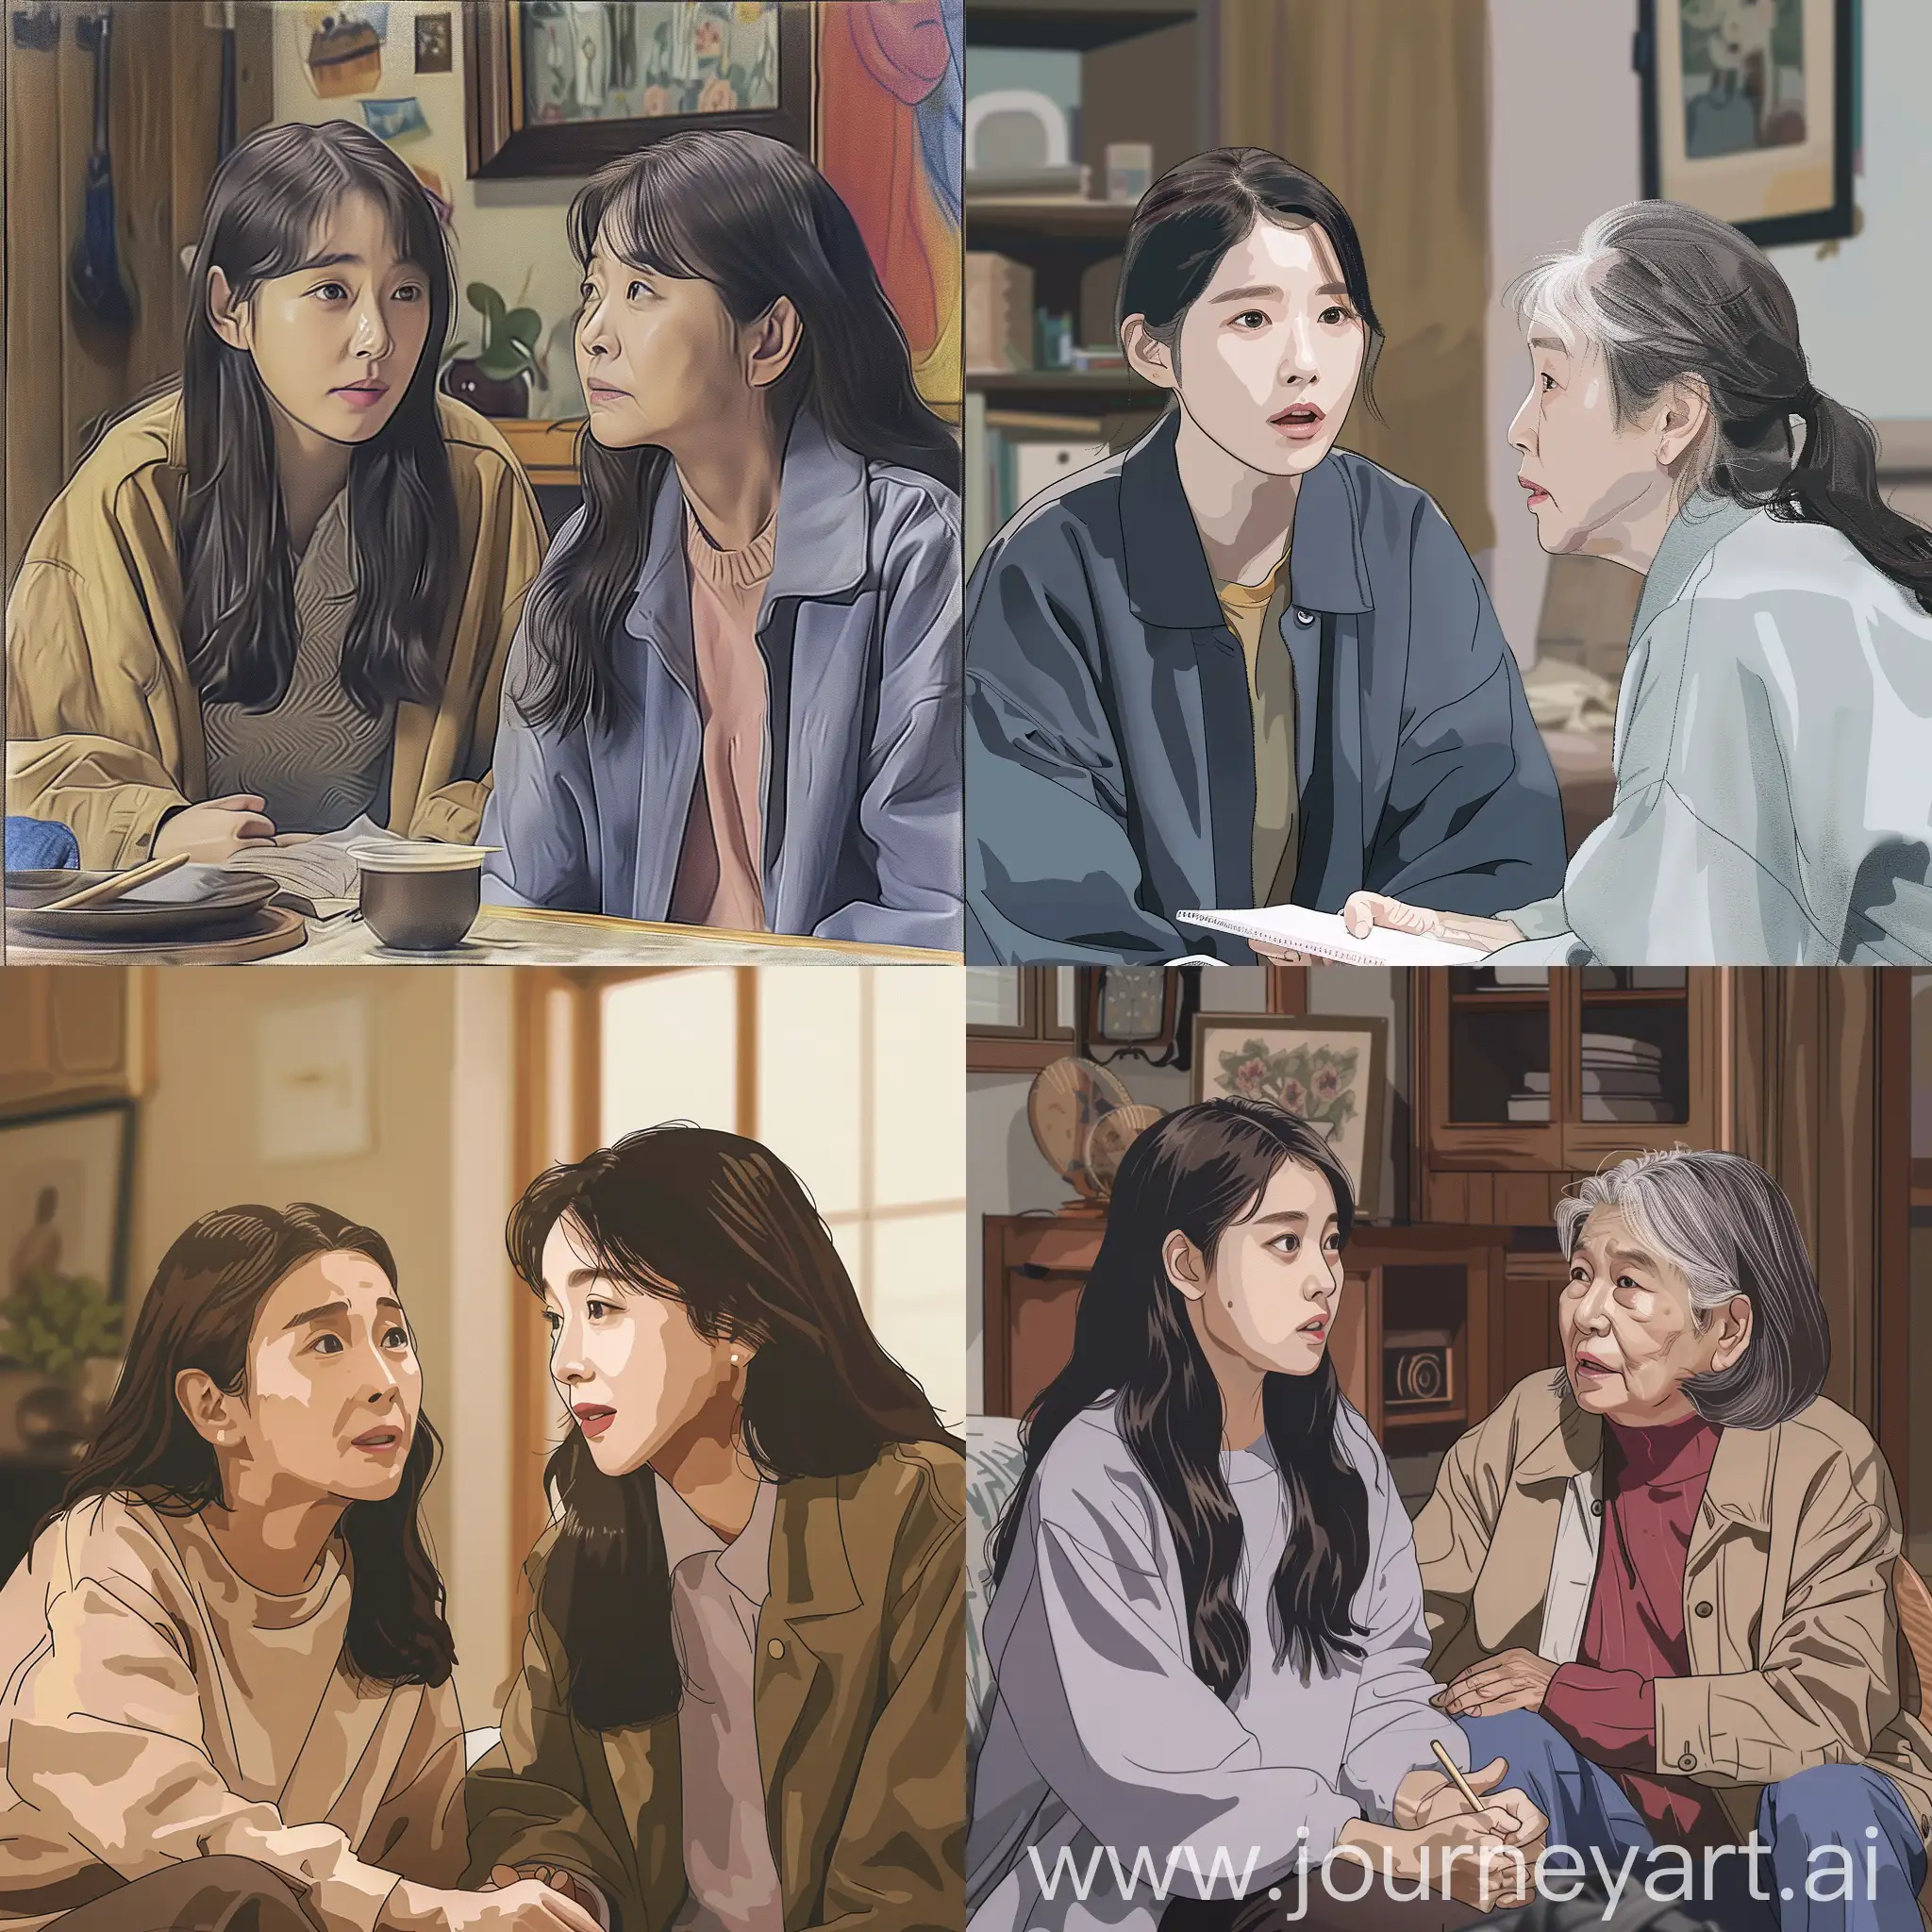 Нарисуй момент из корейского сериала "My mister", который был снять в 2018 году, в главной роли была корейская актриса АйЮ.. В этом моменте главная героиня сидит вместе со своей бабушкой. 